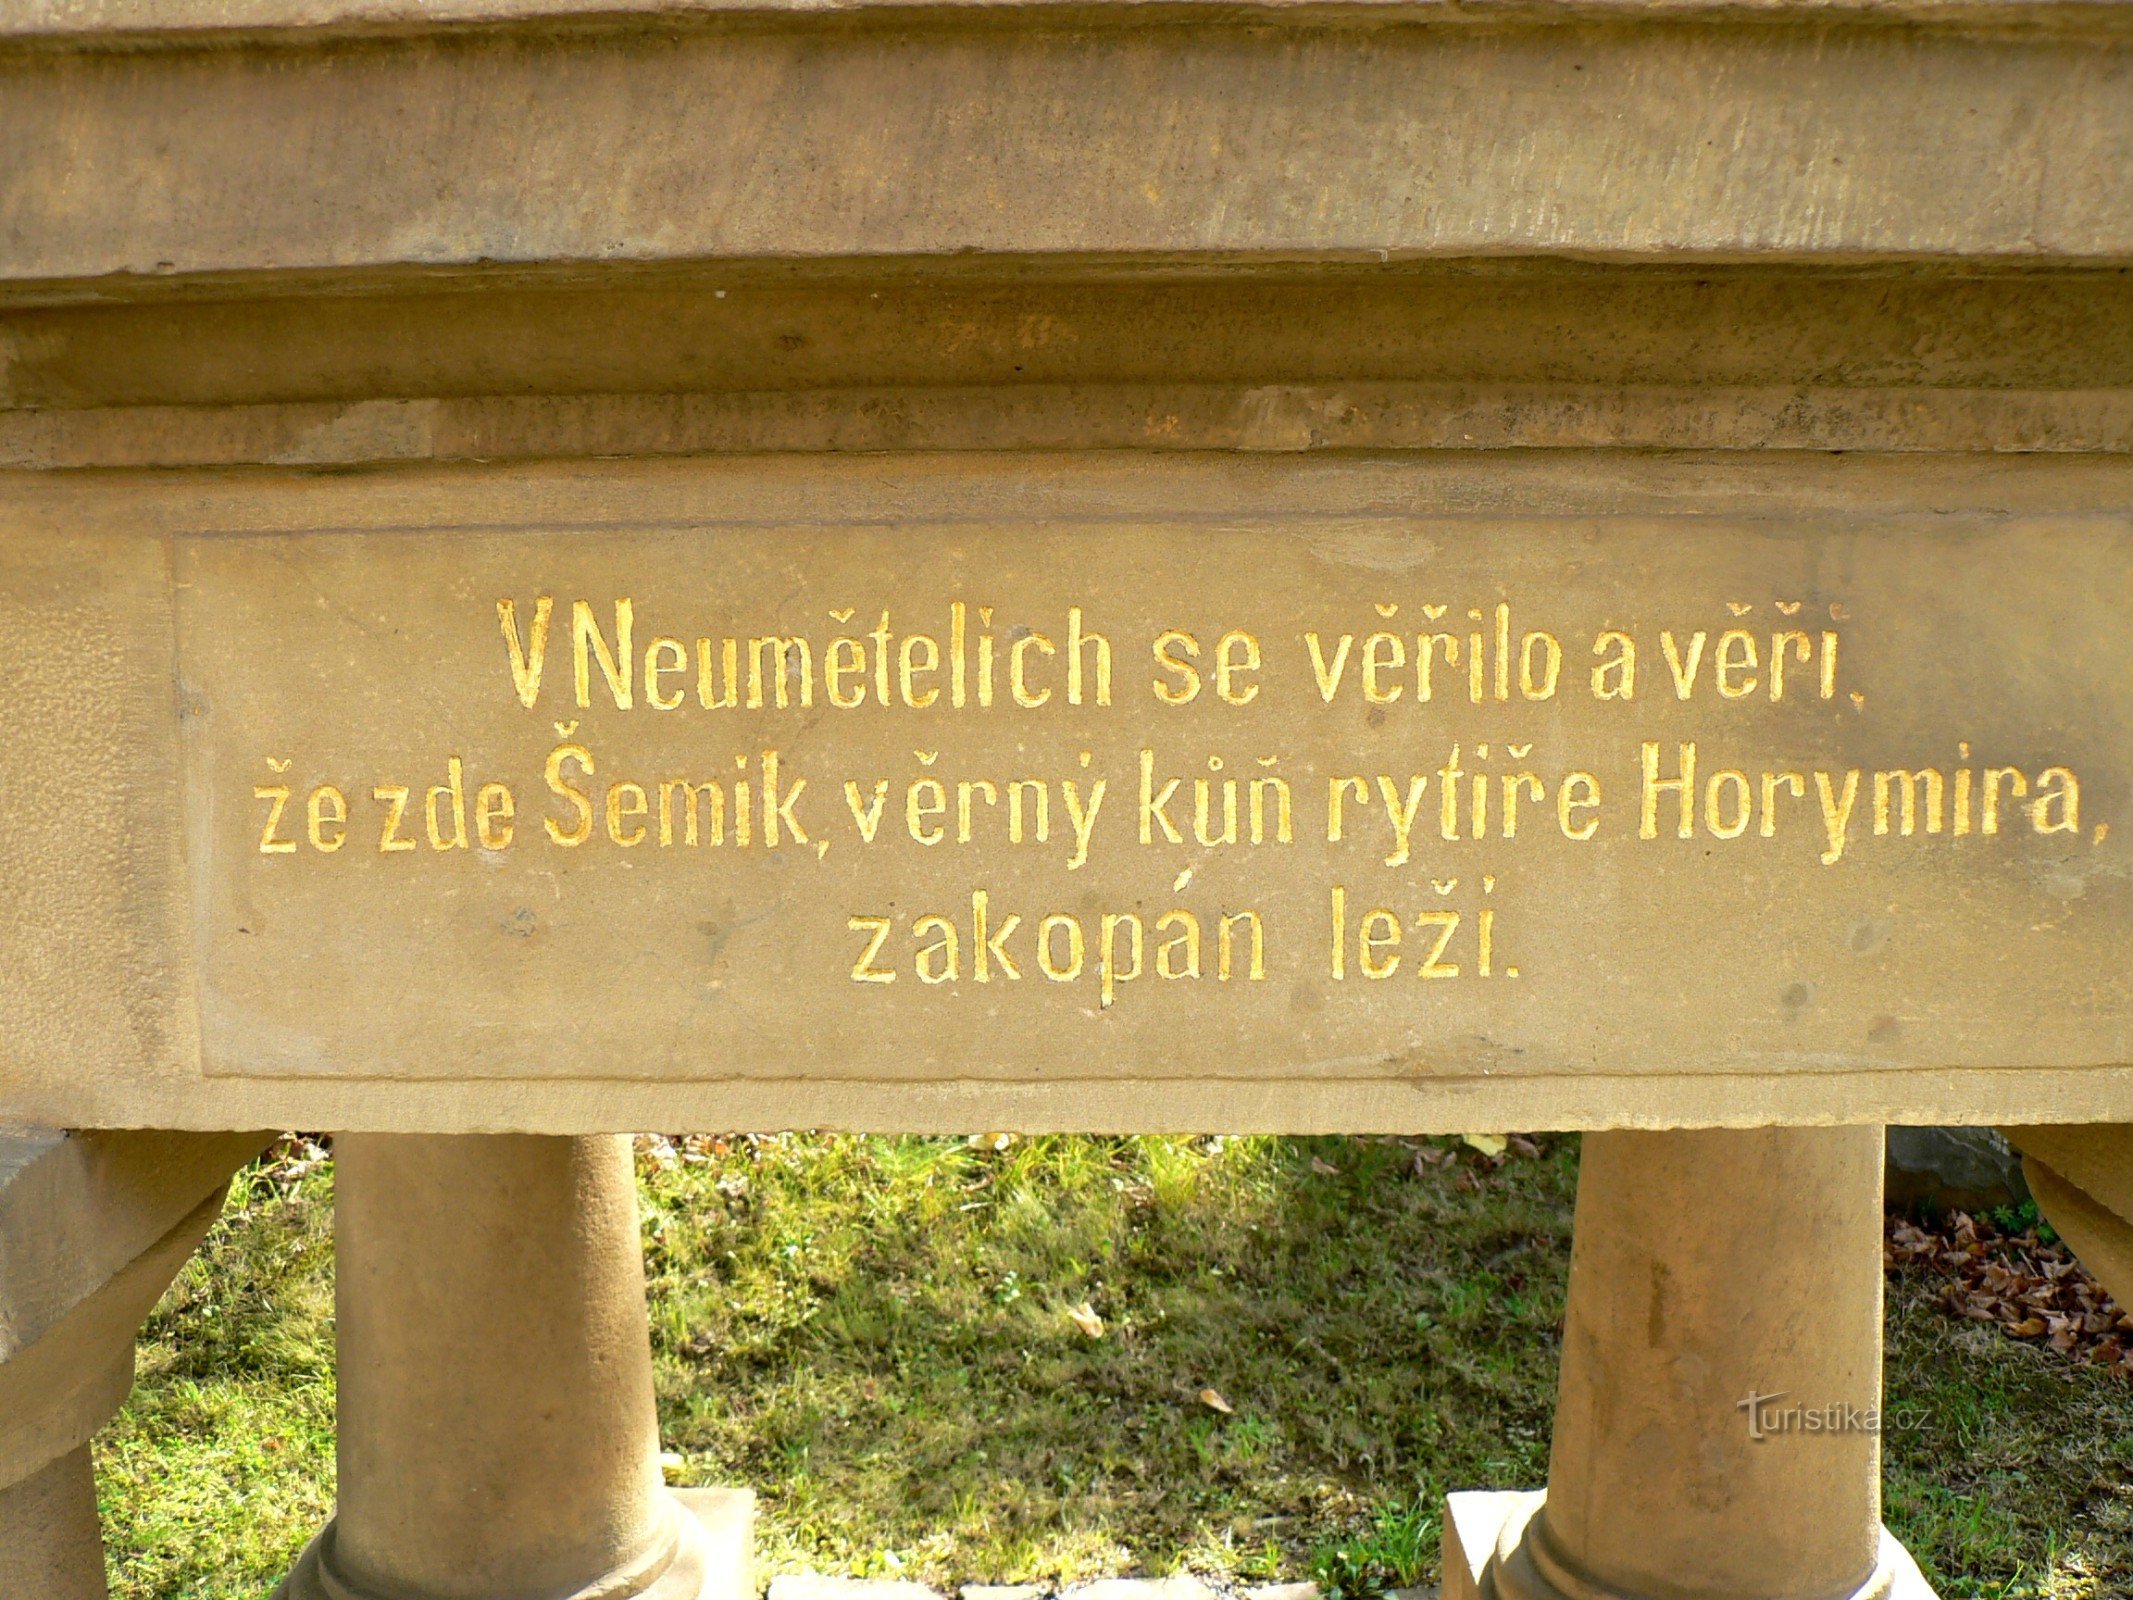 Neumetely - het graf van de legendarische Šemík